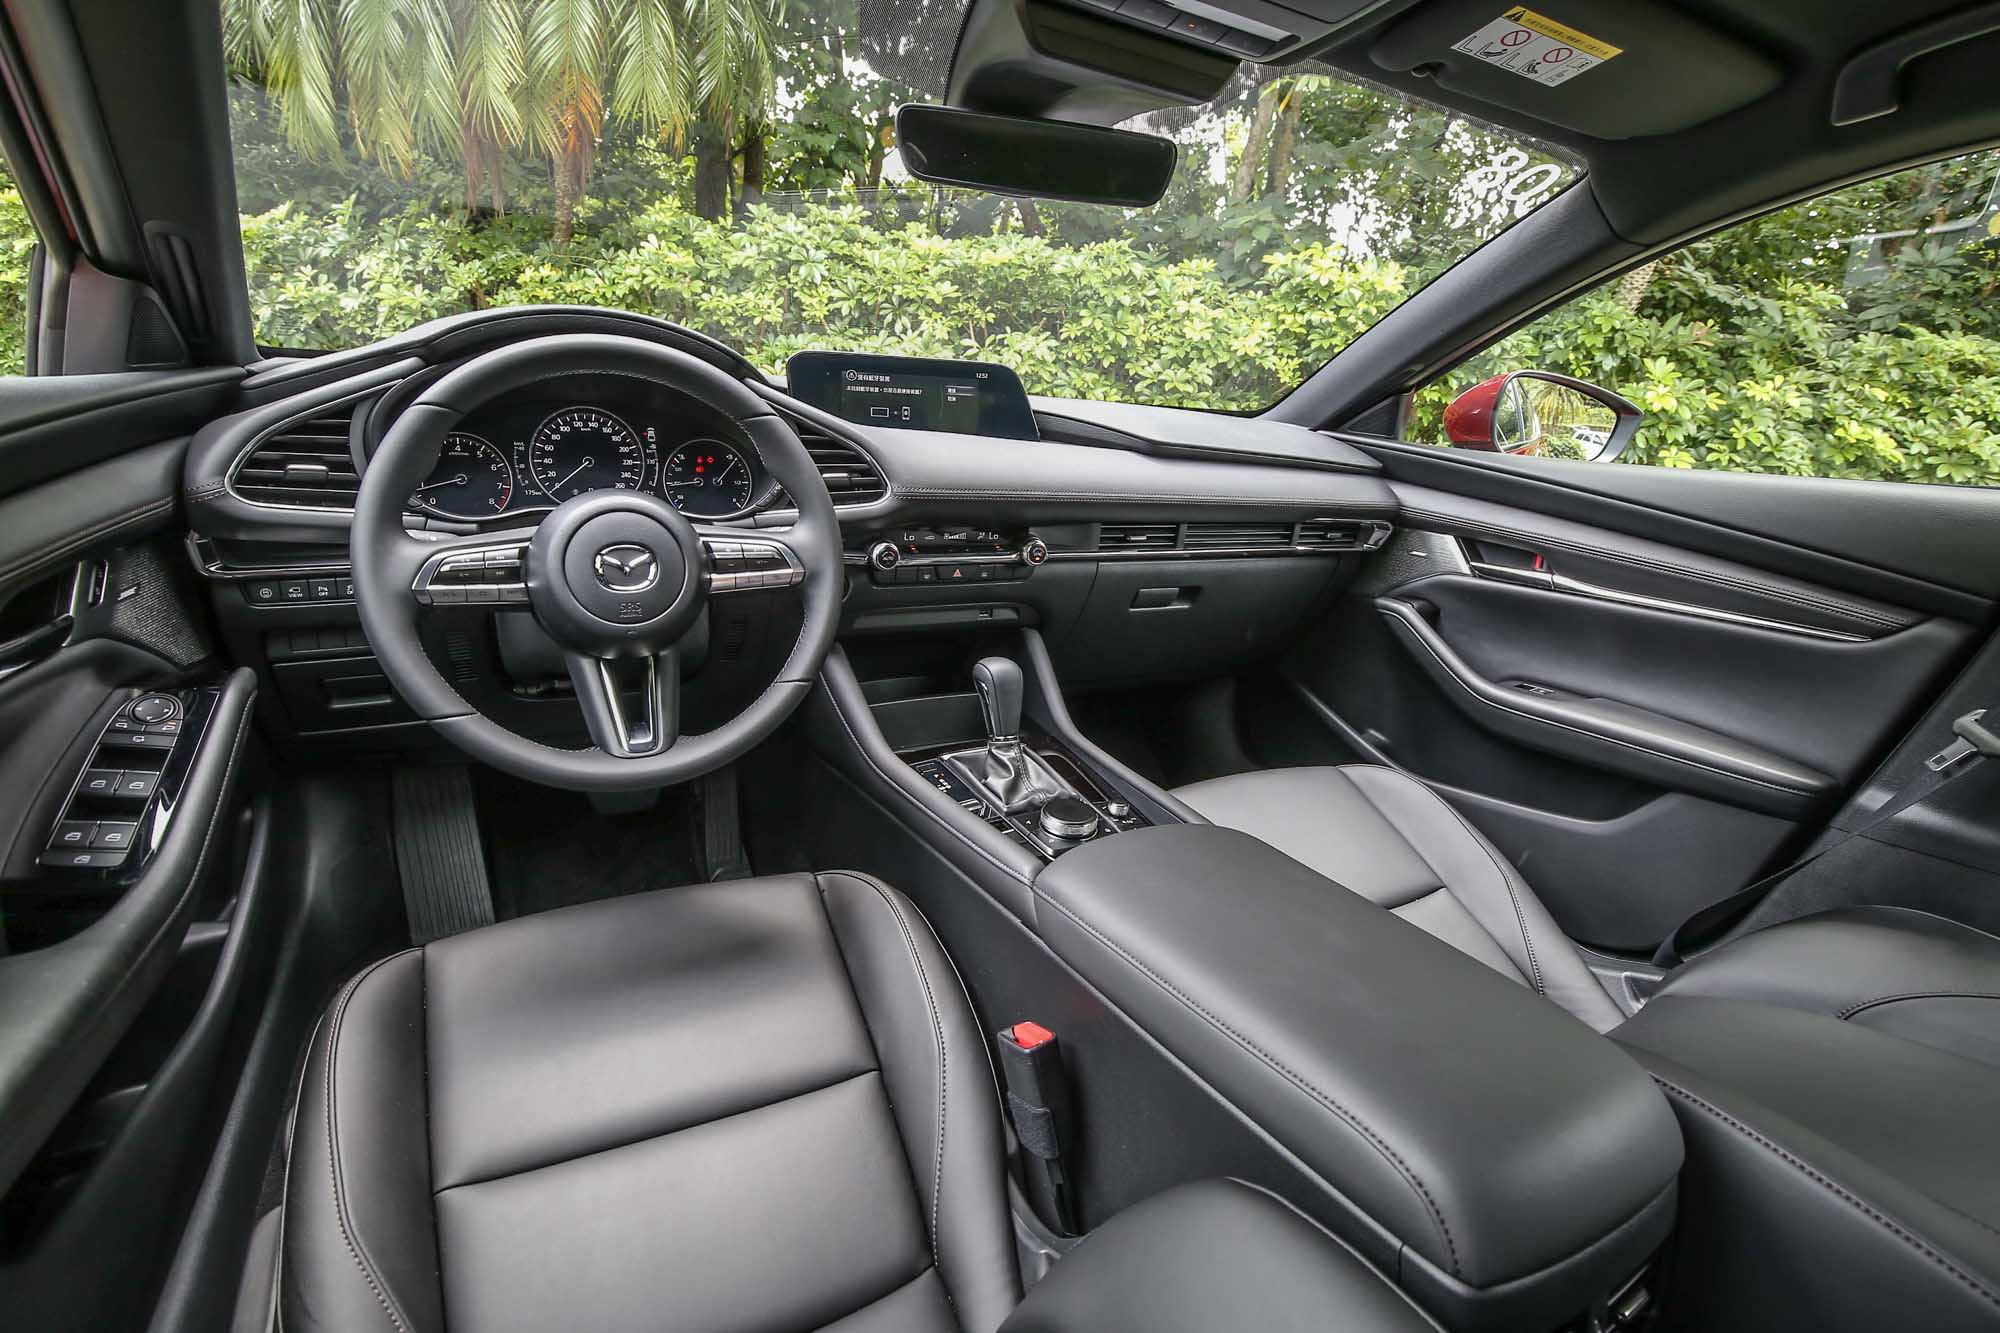 相較於 A-Class 的前衛科技，新世代 Mazda3 的內裝鋪陳相對低調簡約許多。